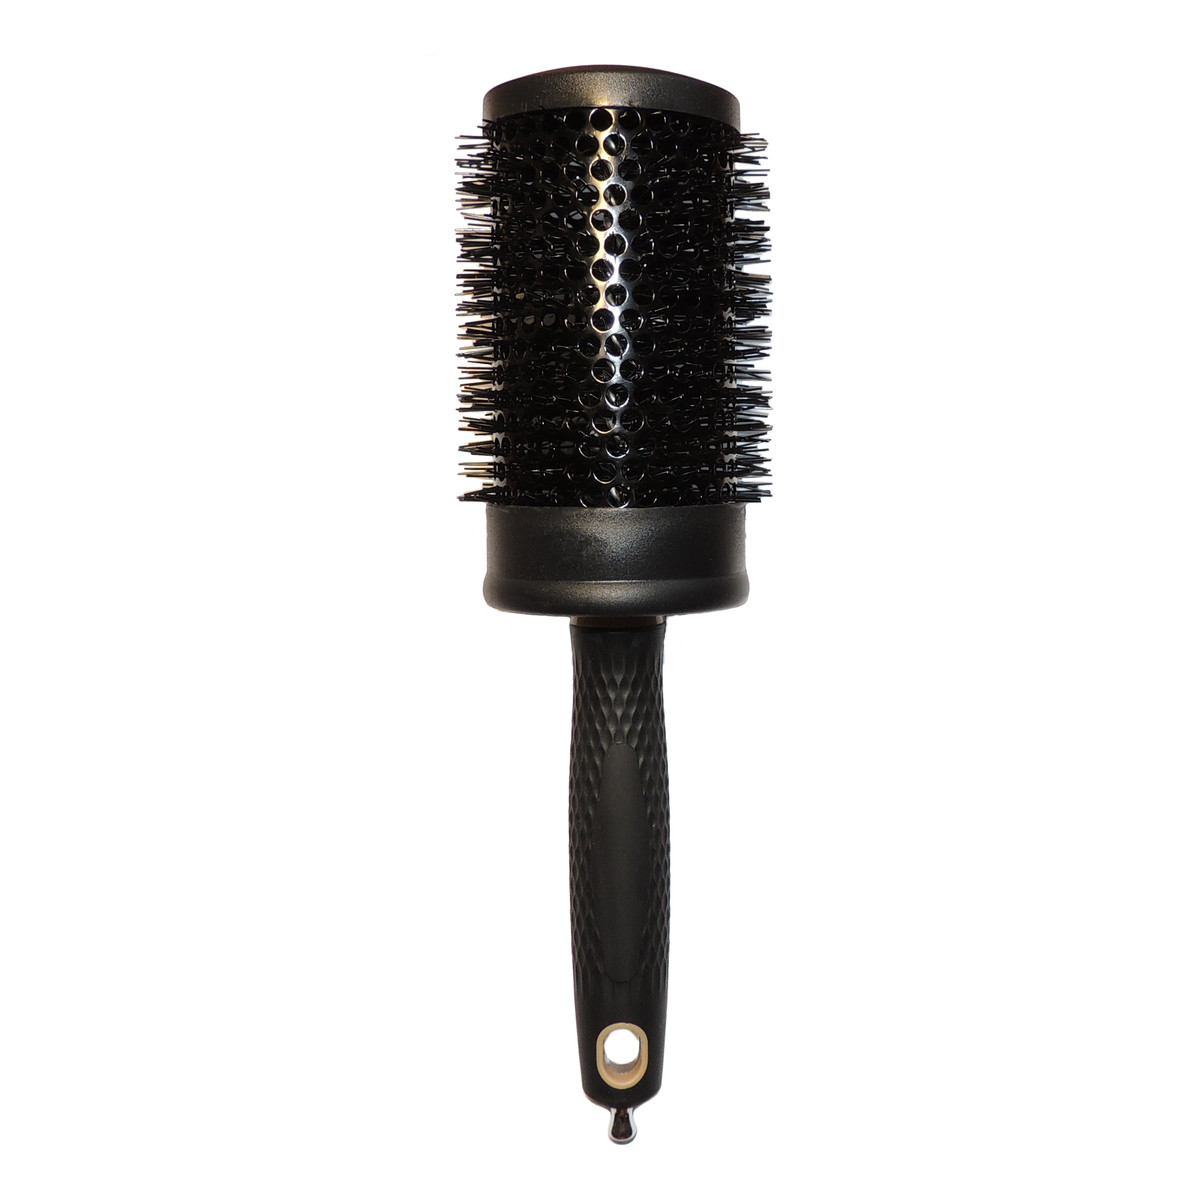 Create Beauty Hair Brushes szczotka do modelowania włosów L=7.5cm średnicy